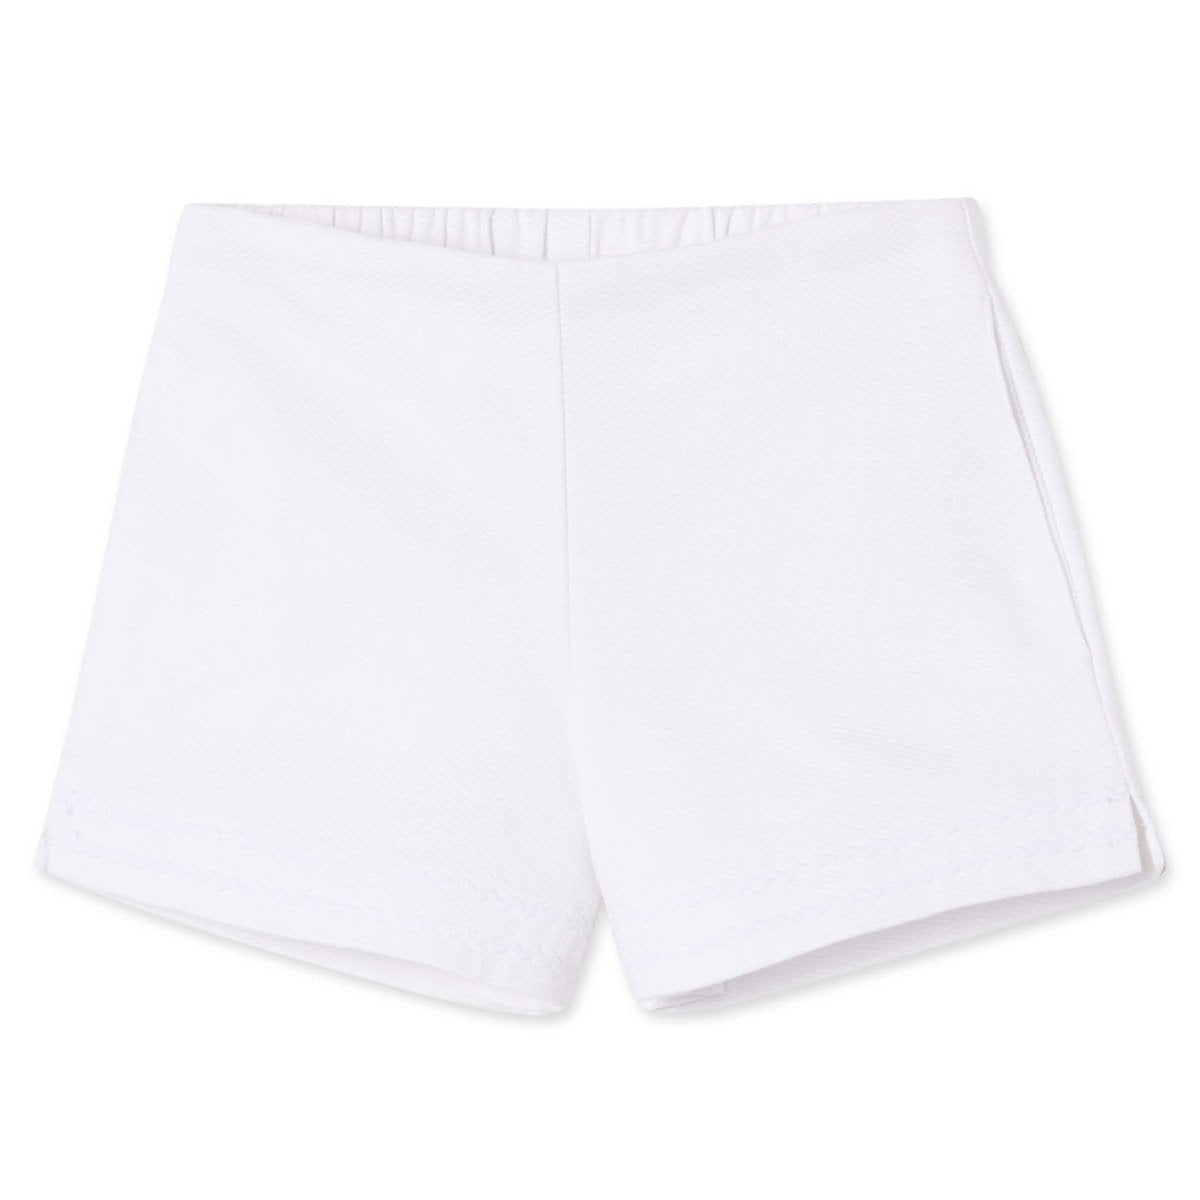 Classic and Preppy Harper Short, Bright White Pique-Bottoms-Bright White-2T-CPC - Classic Prep Childrenswear